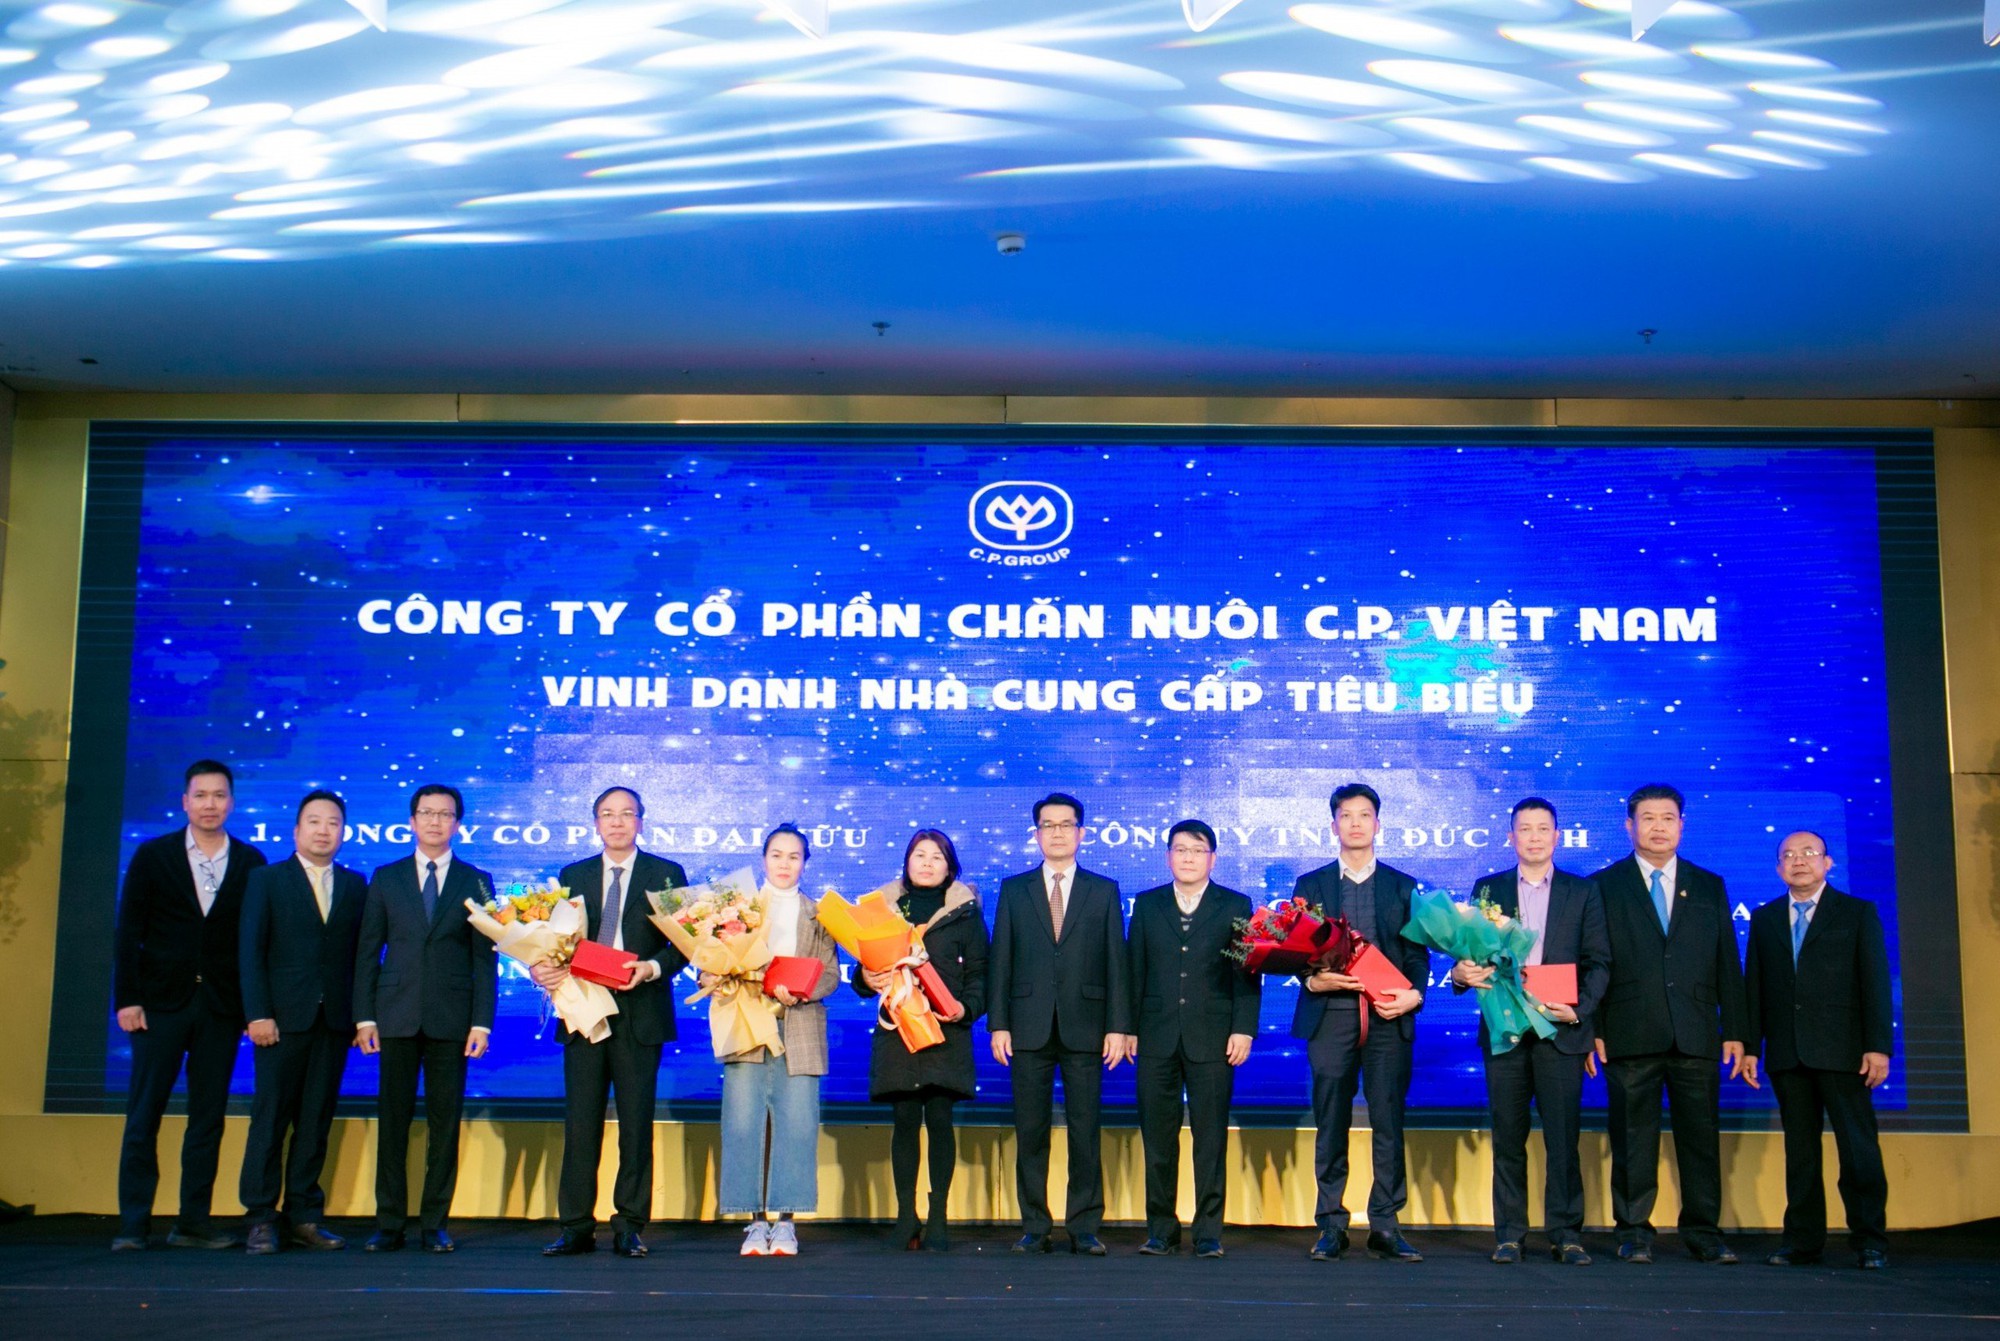 C.P. Việt Nam tổ chức thành công &quot;Hội nghị phát triển tiềm năng nhà cung cấp&quot; tại khu vực phía Bắc - Ảnh 4.